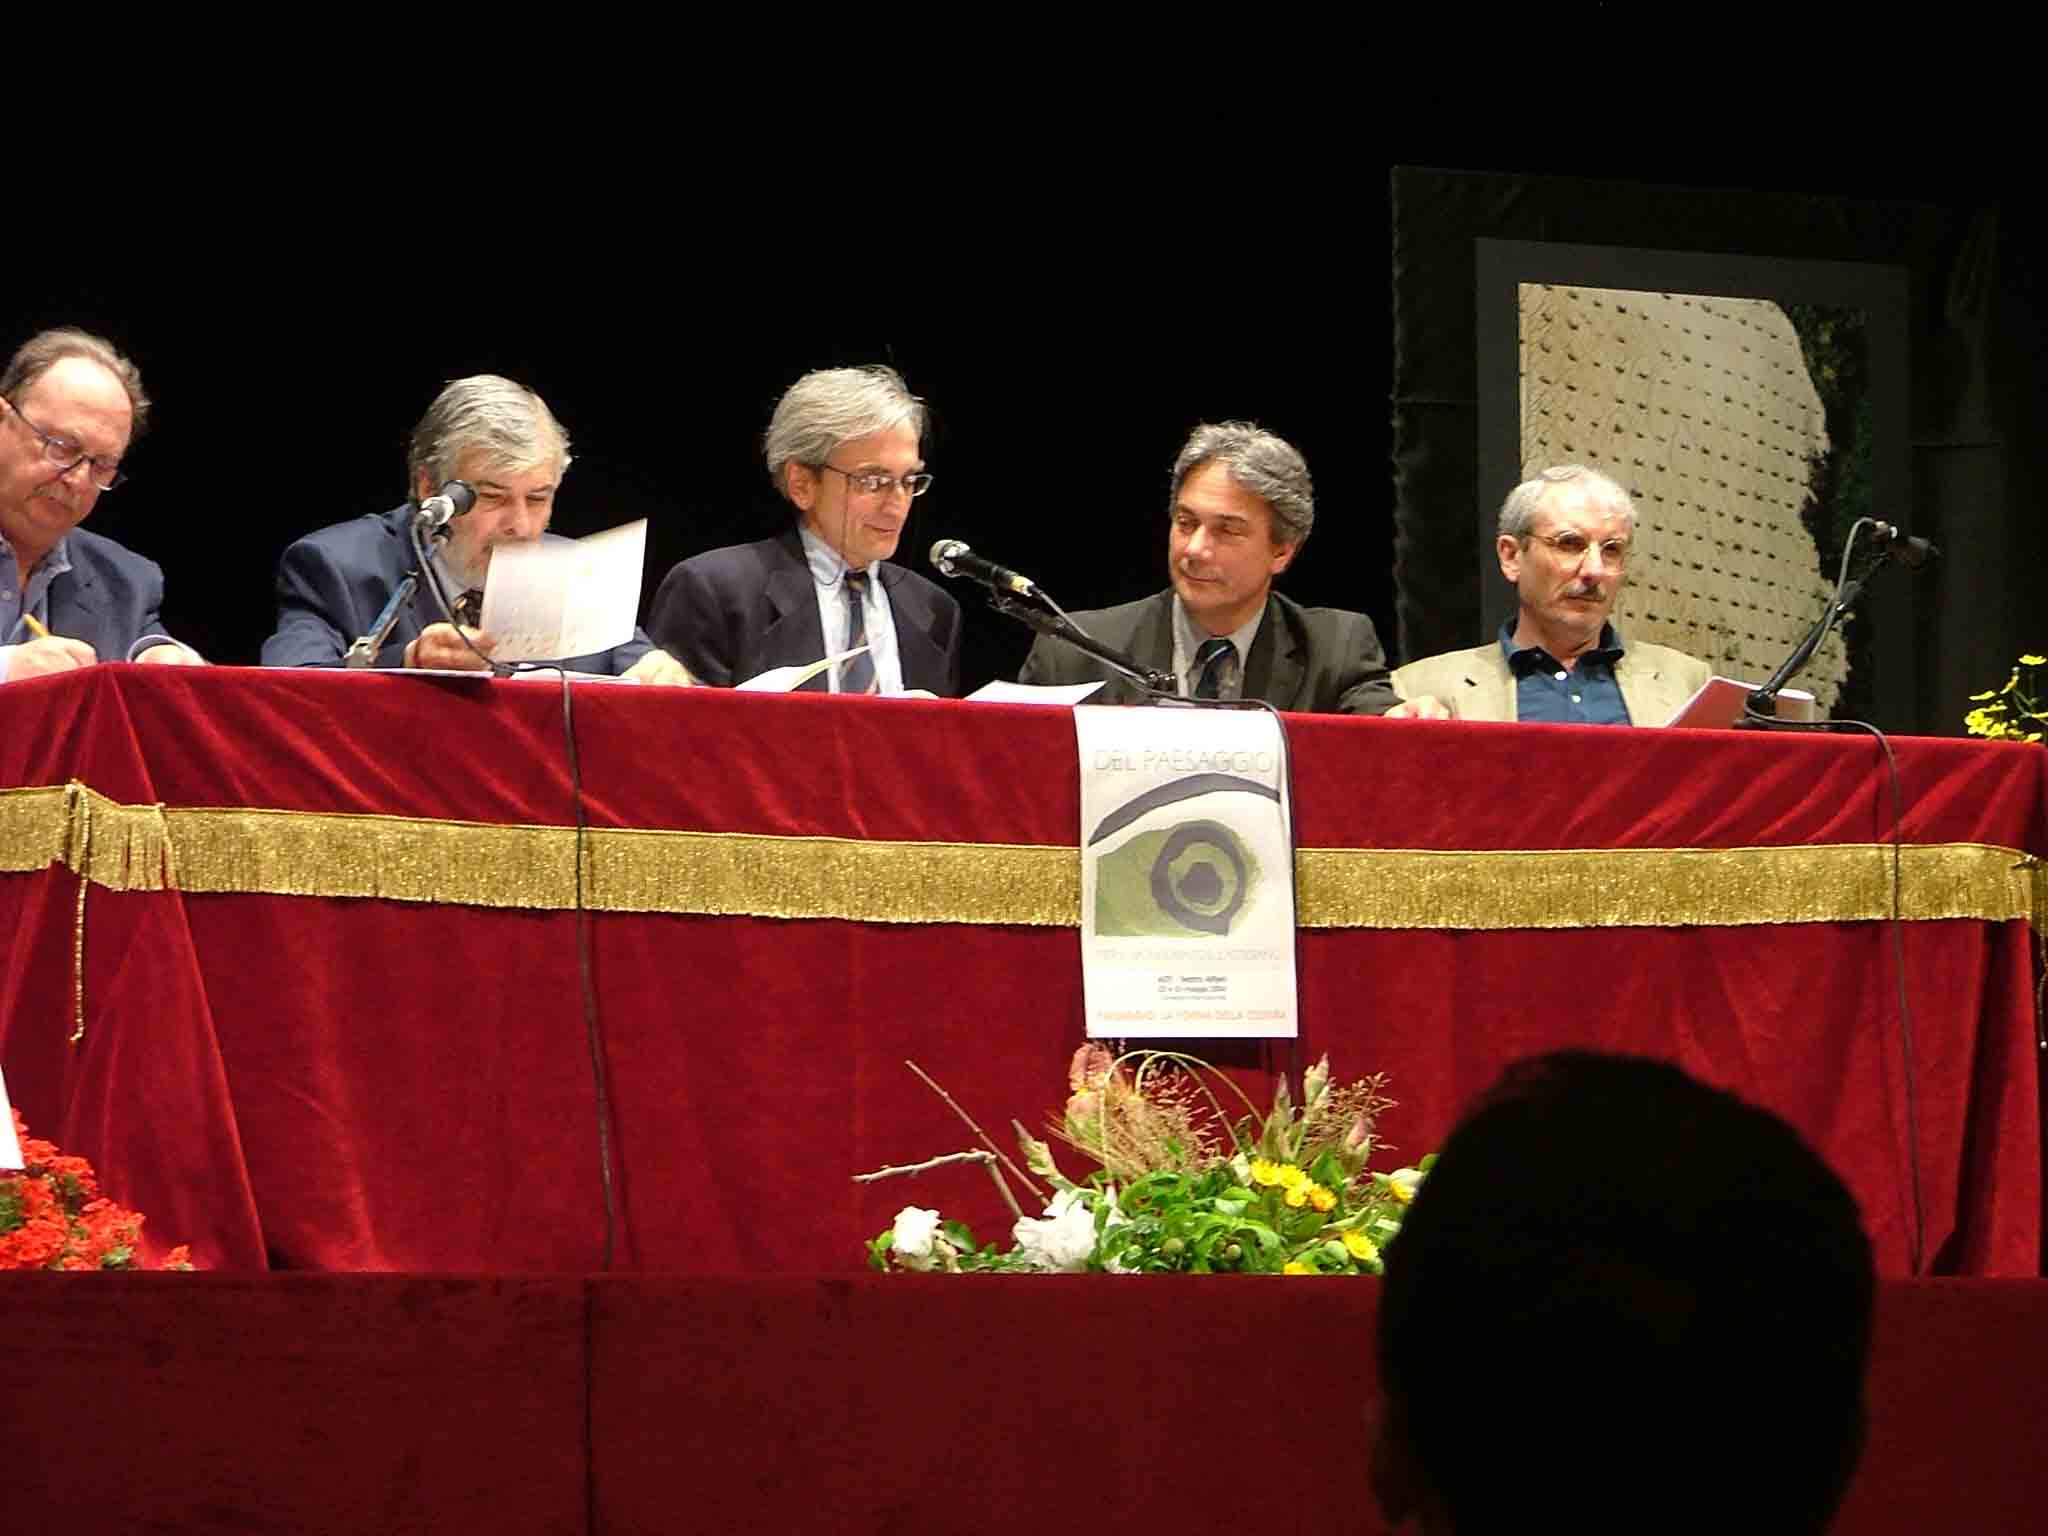 Coordinatori: Prof. Enrico Ercole (in centro - sx) e Arch. Marco Bianchi (in centro - dx).